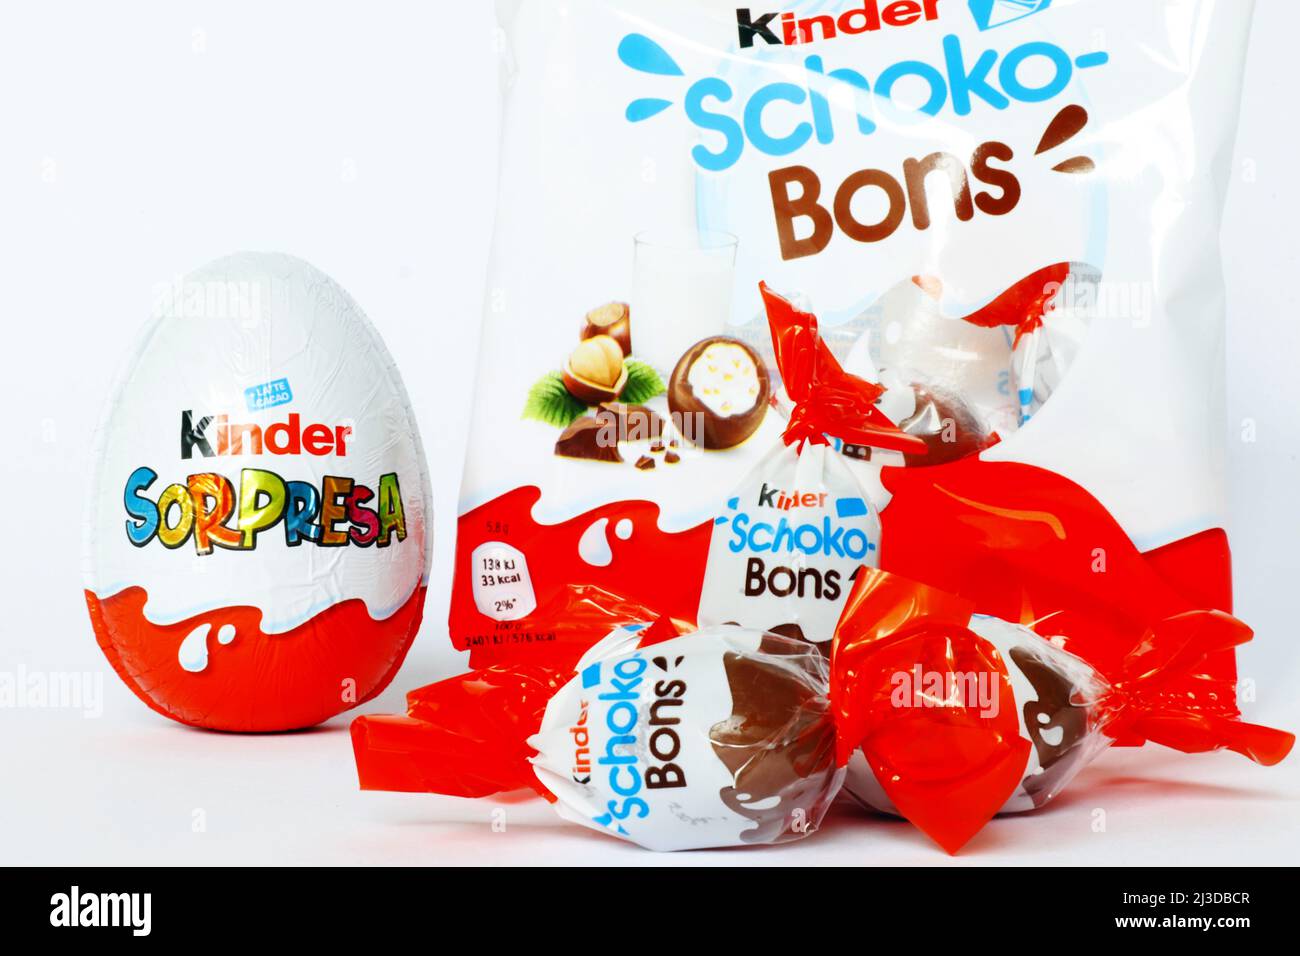 Pescara, Italy, 7th Apr, 2022: Il produttore italiano di caramelle Ferrero  ha ampliato il ritiro e il ritiro dei prodotti con uova a sorpresa Kinder,  mini uova, Schoko-Bons e i prodotti del